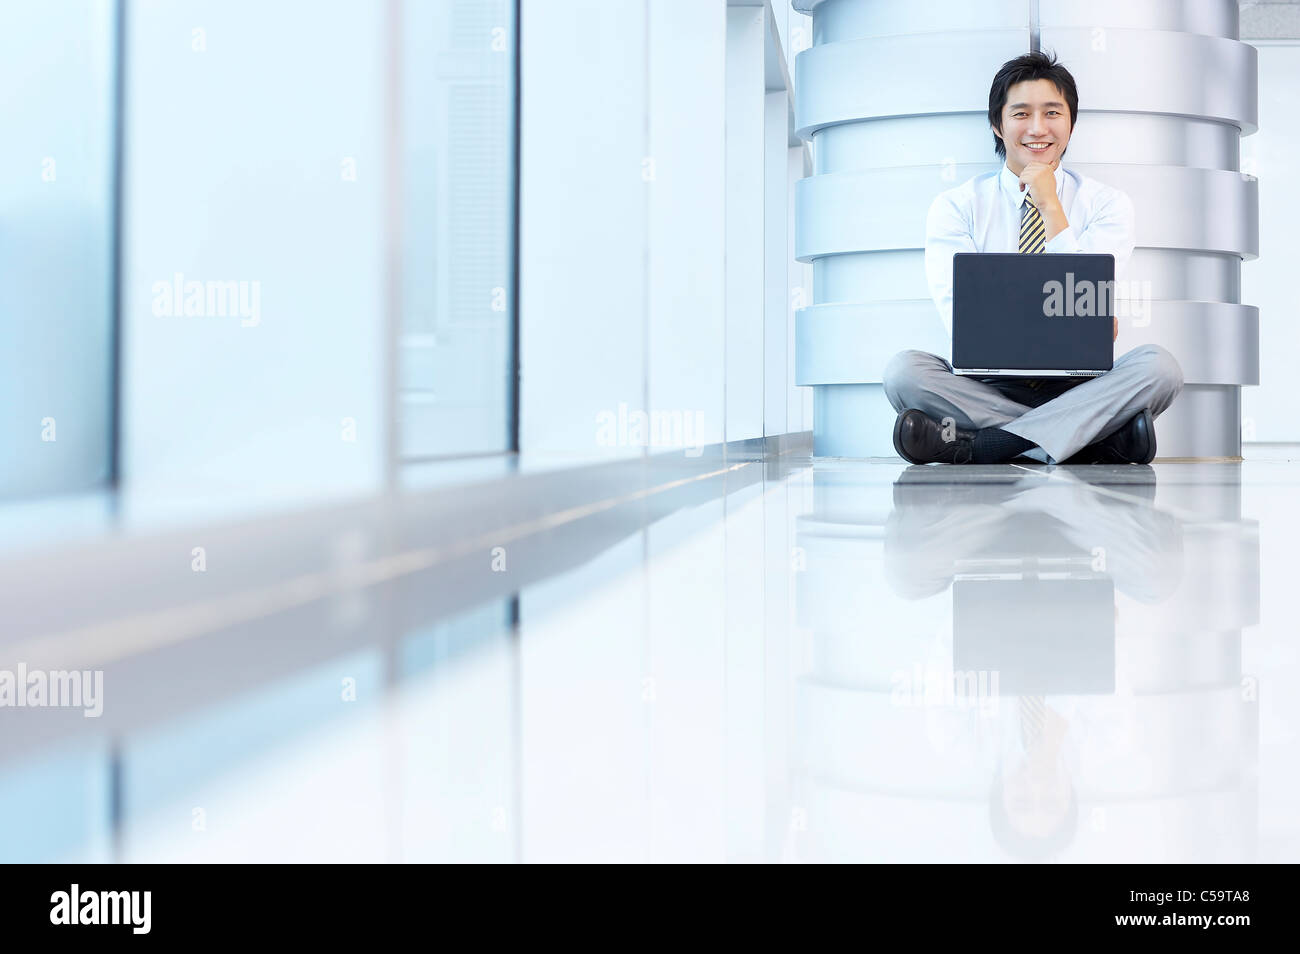 Portrait of businessman sitting par pilier, using laptop Banque D'Images